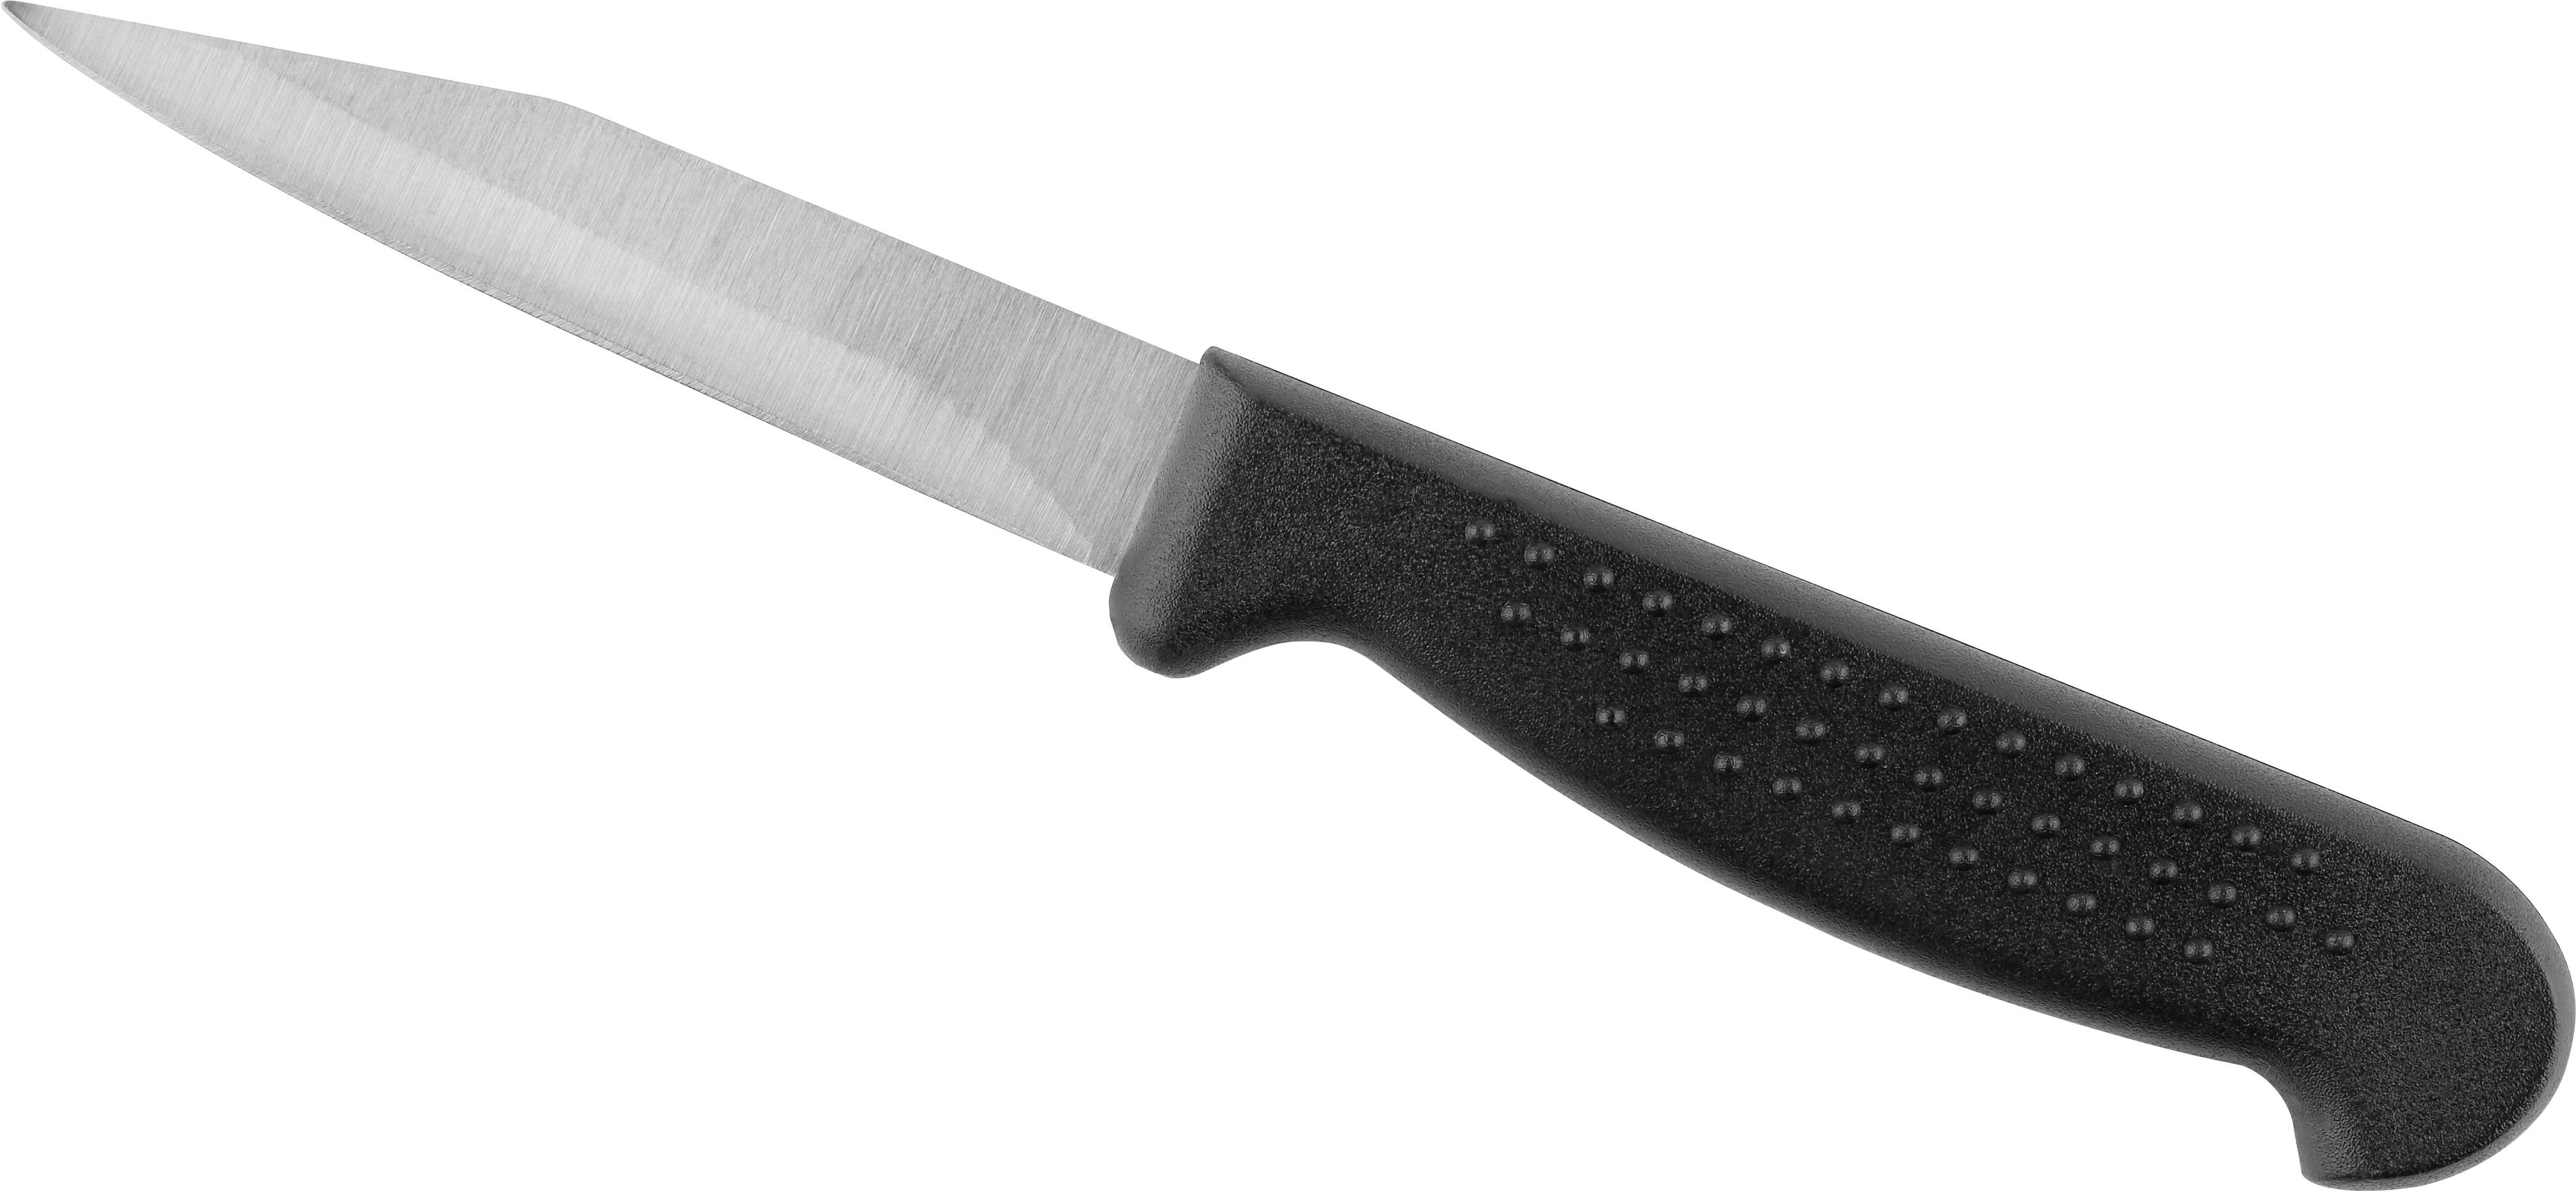 nóż uniwersalny Joe stal nierdzewna - czarny/stalowy, tworzywo sztuczne/metal (17,5cm) - Modern Living